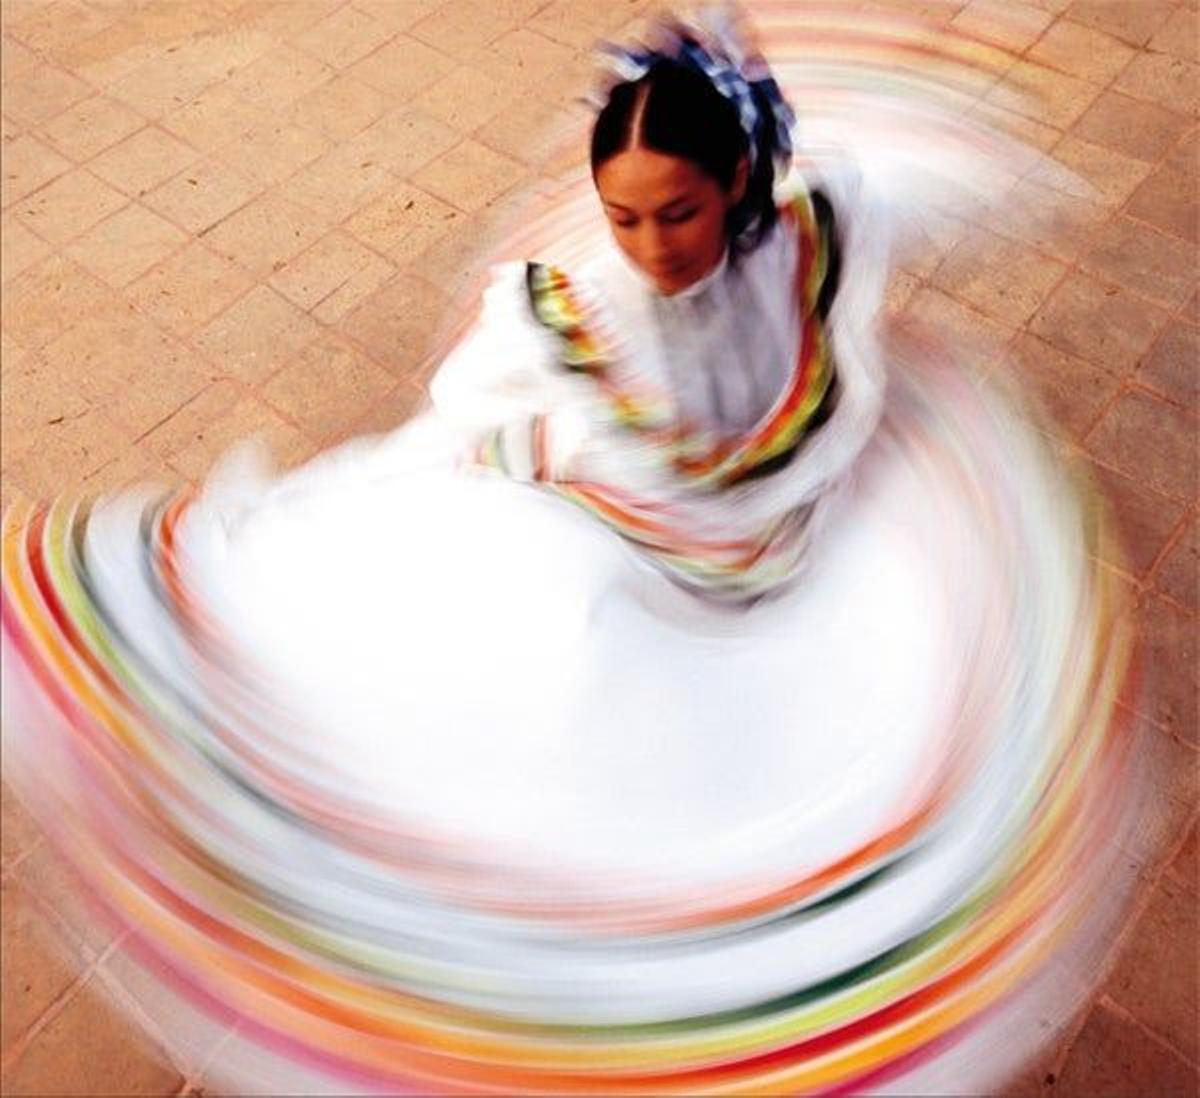 Fiestas
Los mexicanos celebran
numerosas fiestas a lo largo
del año, tanto religiosas co